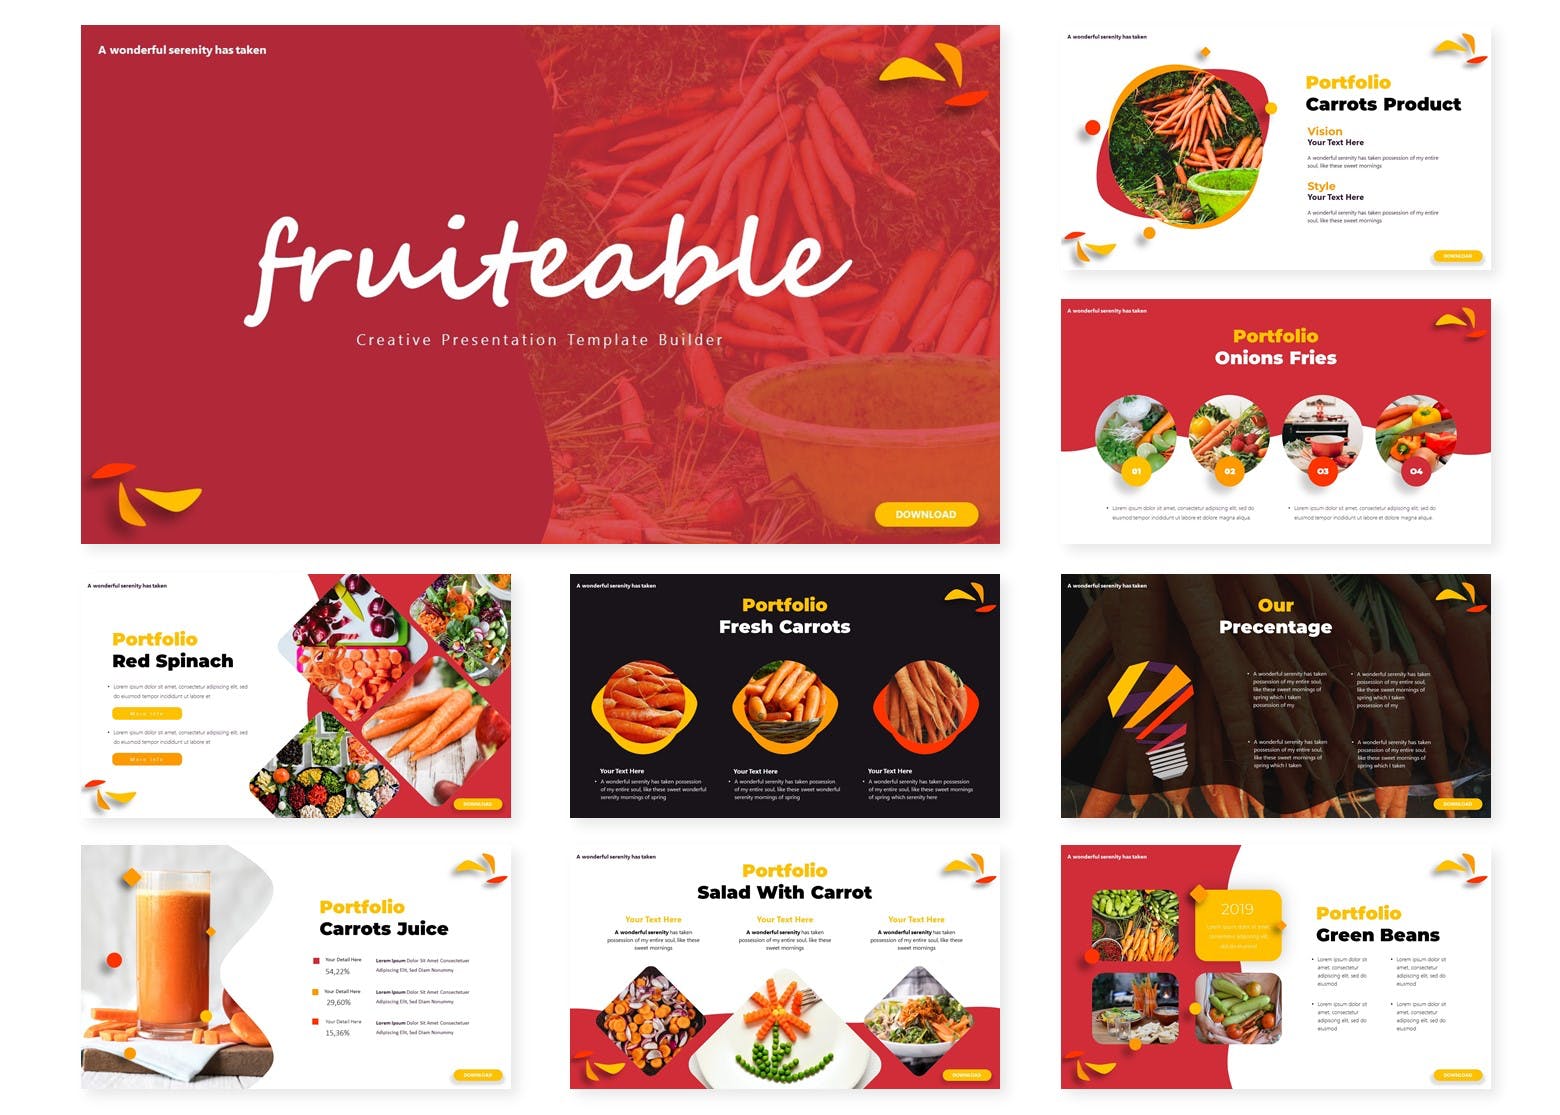 水果品牌宣传PPT幻灯片模板 Fruiteable | Powerpoint Template插图(1)